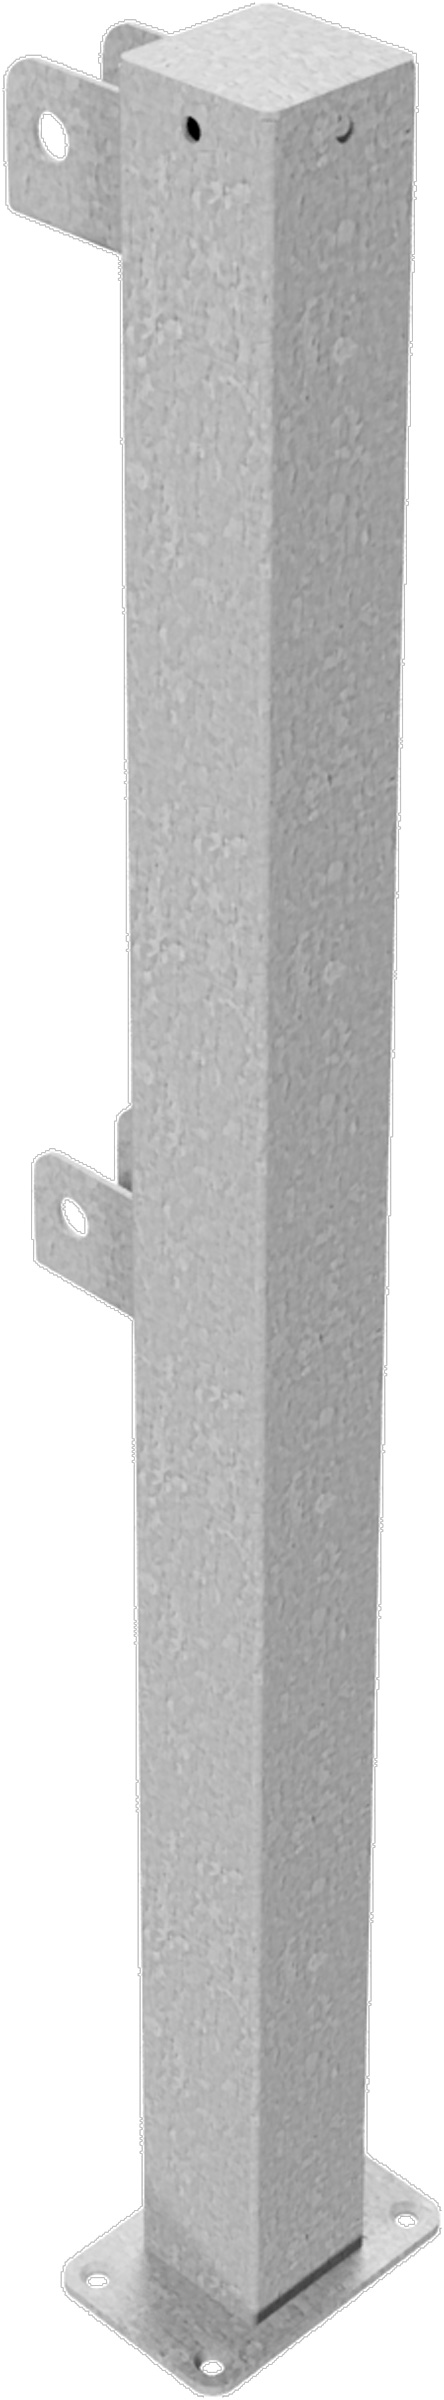 Schake Schutzgeländer Stahl Endpfosten OD 70 x 70 mm verzinkt